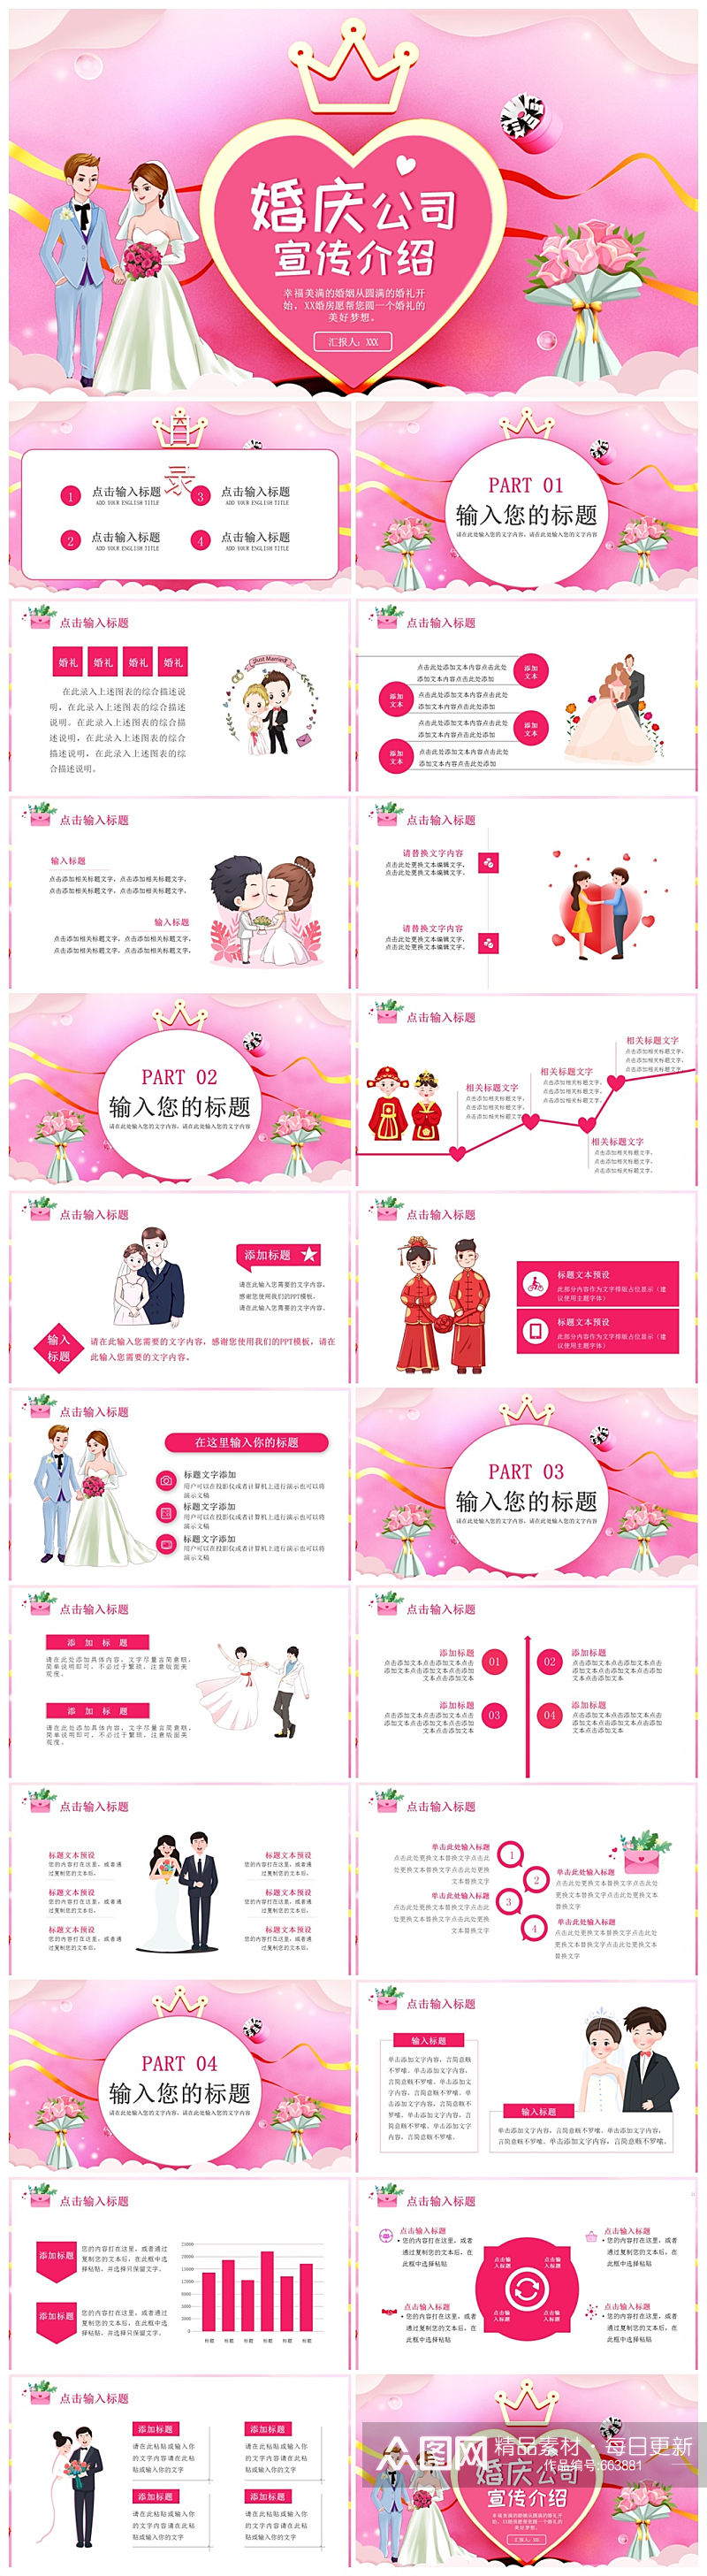 粉色卡通爱情婚庆公司婚礼宣传介绍PPT素材